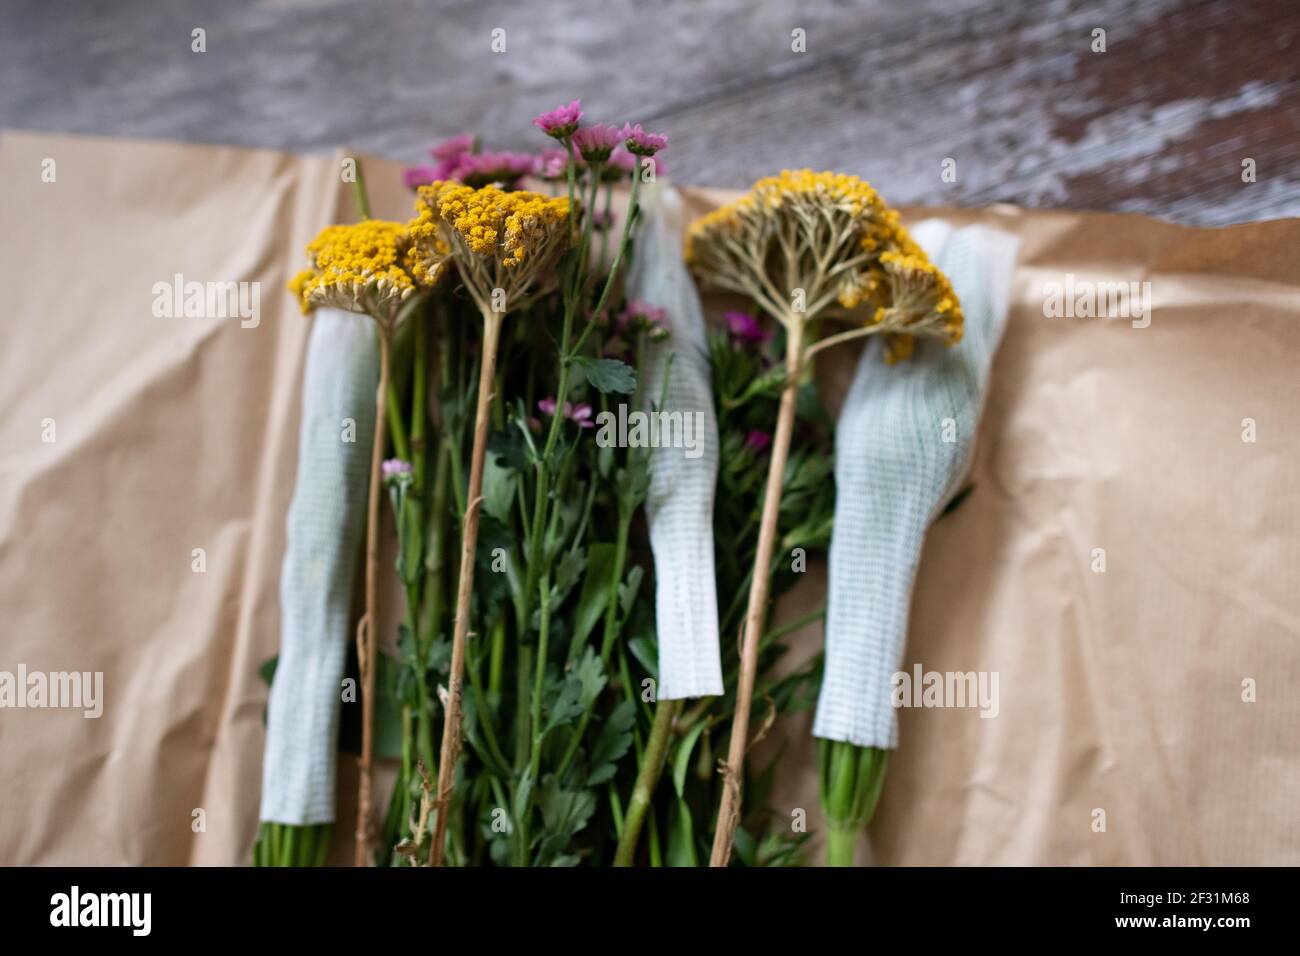 Livraison de fleurs en boîte aux lettres de Bloom and Wild - Royaume-Uni Banque D'Images